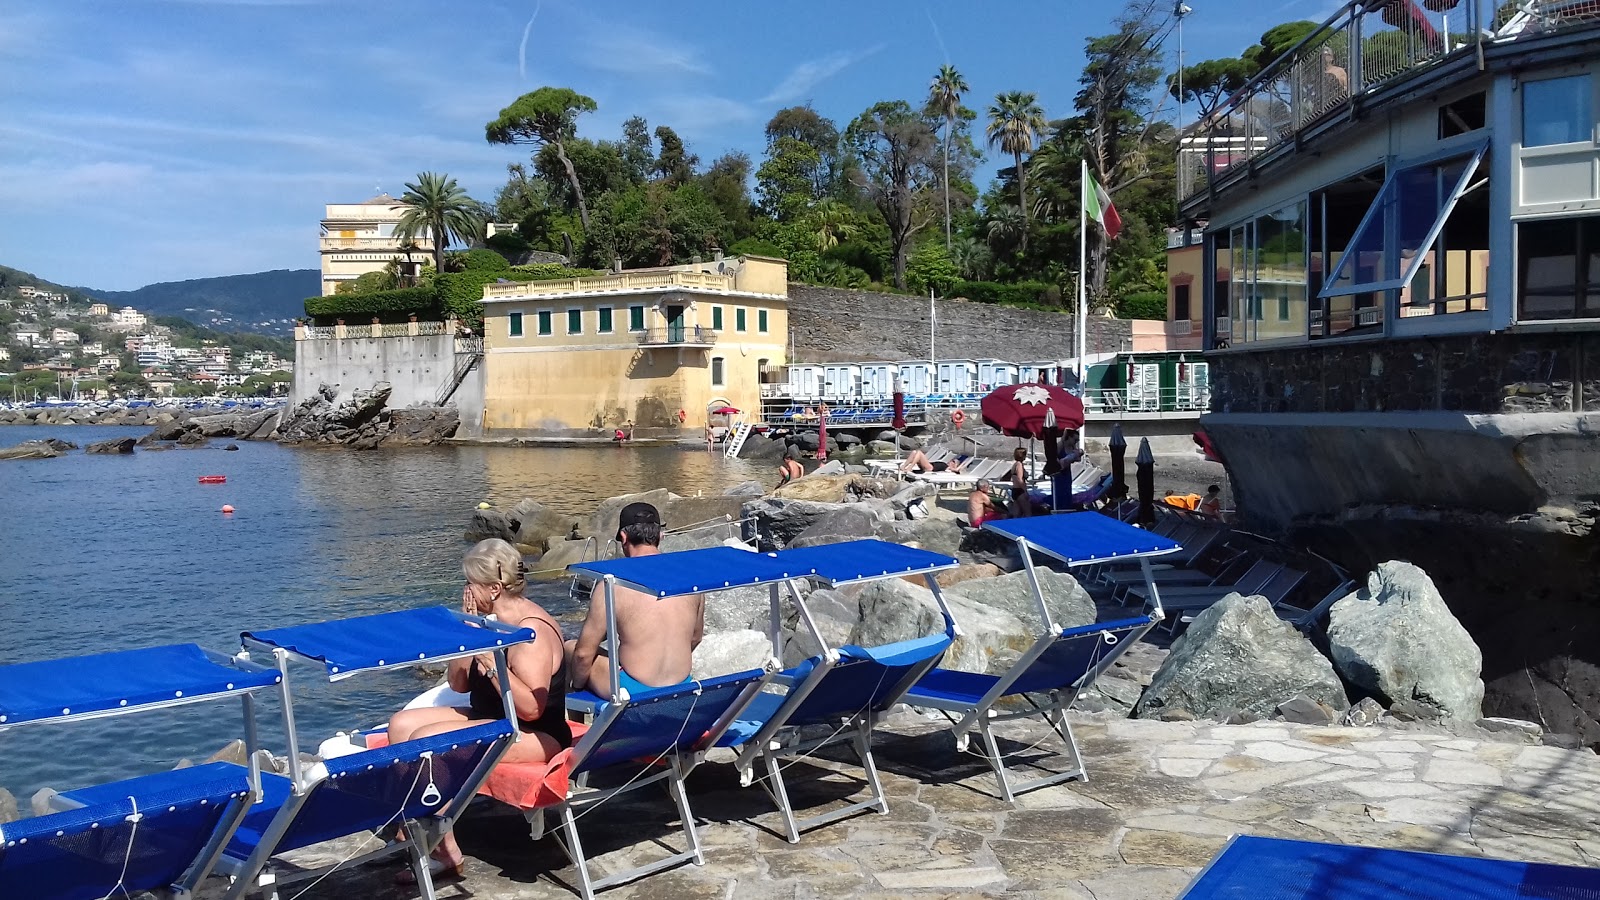 Bagni Baia Dei Sogni - Rapallo'in fotoğrafı doğrudan plaj ile birlikte